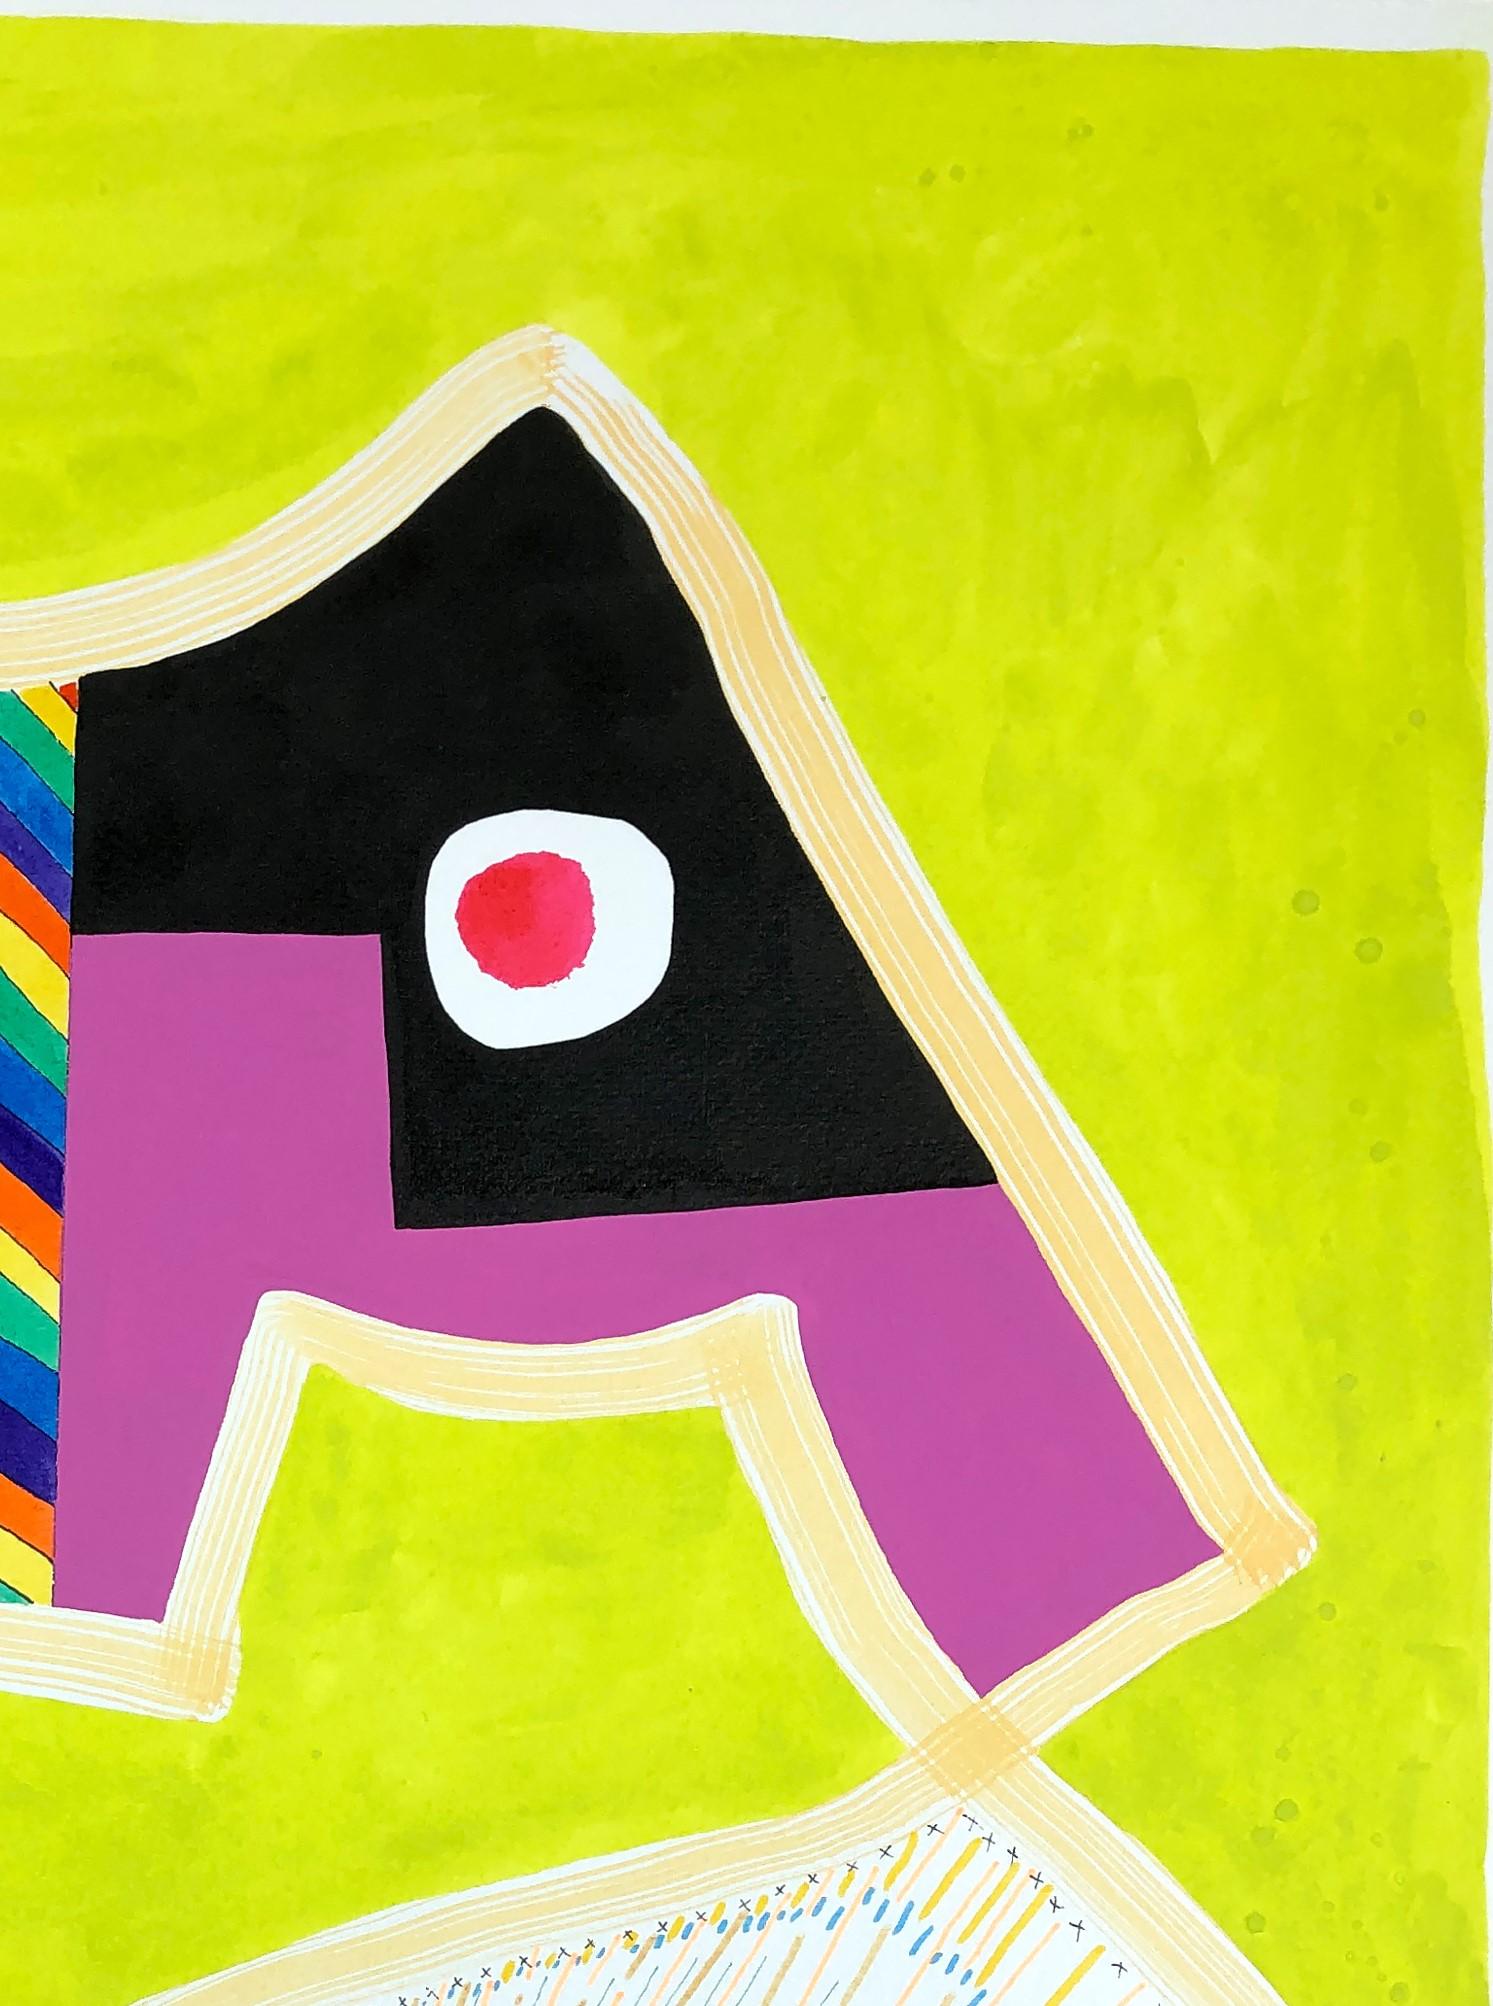 Œuvre abstraite et géométrique contemporaine à motifs colorés, réalisée sur papier par l'artiste texan Max Manning. L'œuvre comporte des éléments organiques et  des formes géométriques en rose, bleu, vert, noir et blanc. Signé par l'artiste au dos